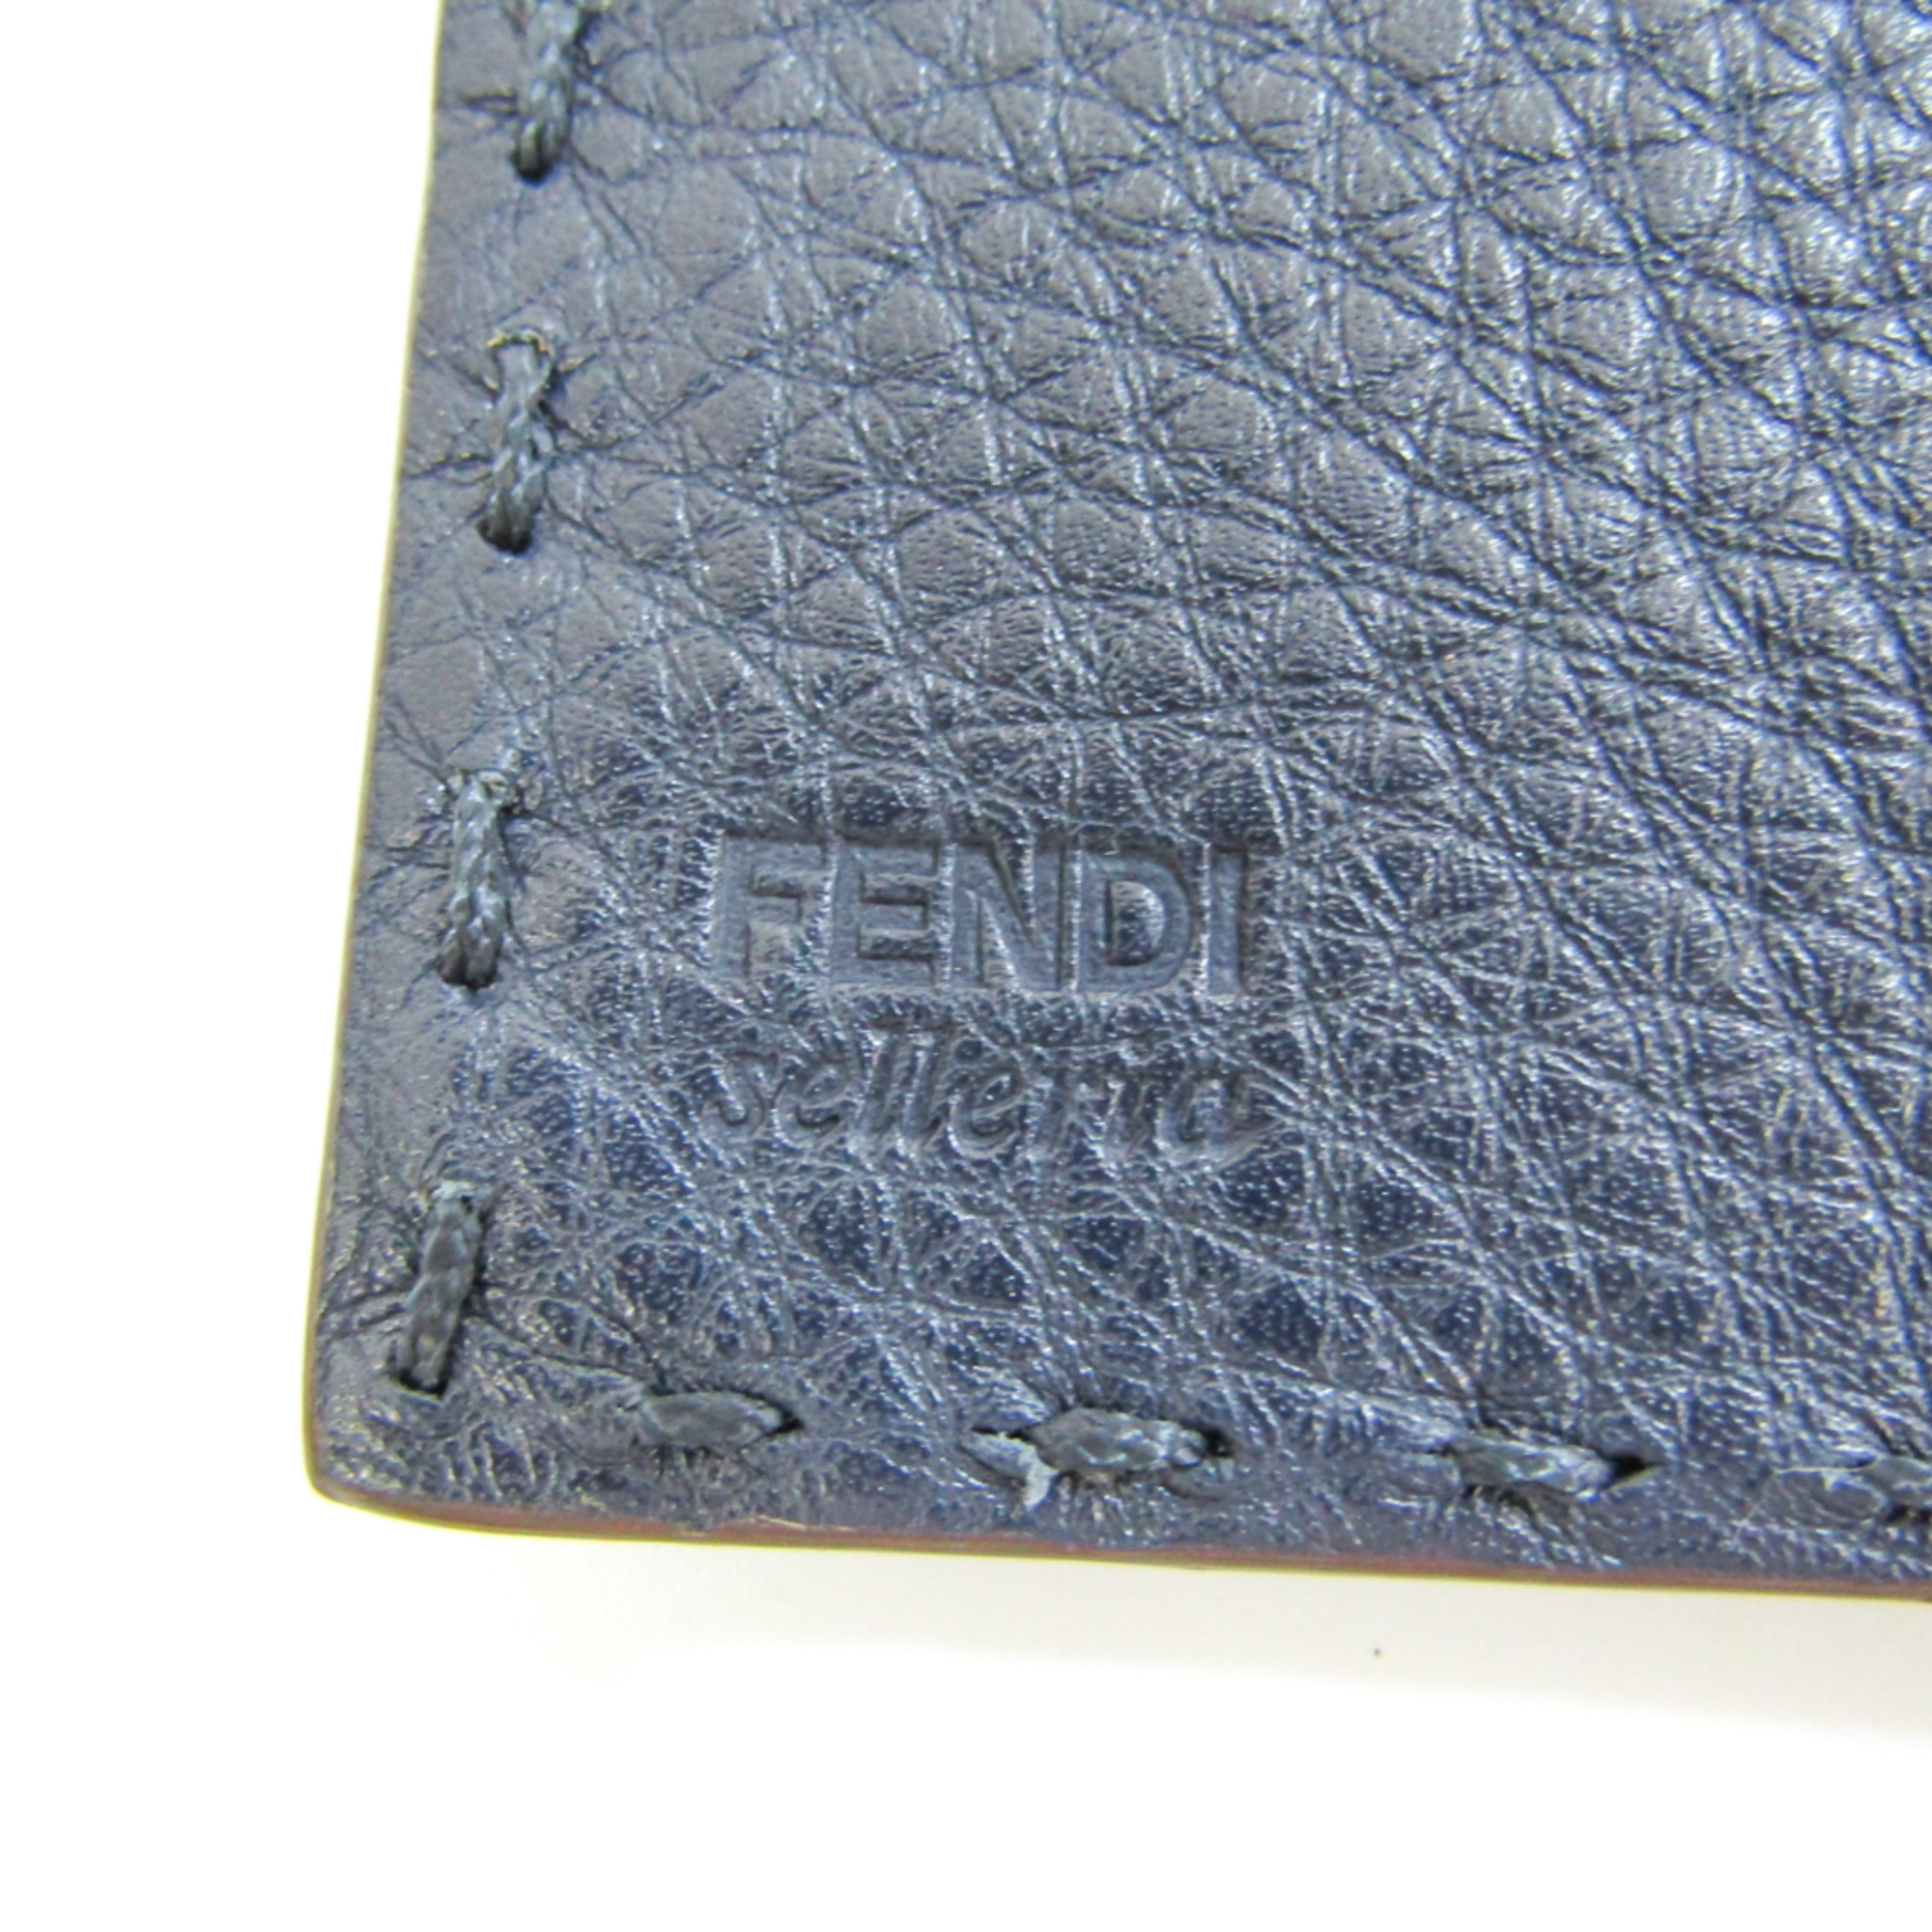 フェンディ(Fendi) セレリア 8M3030 メンズ,レディース レザー 長財布（三つ折り） ネイビー